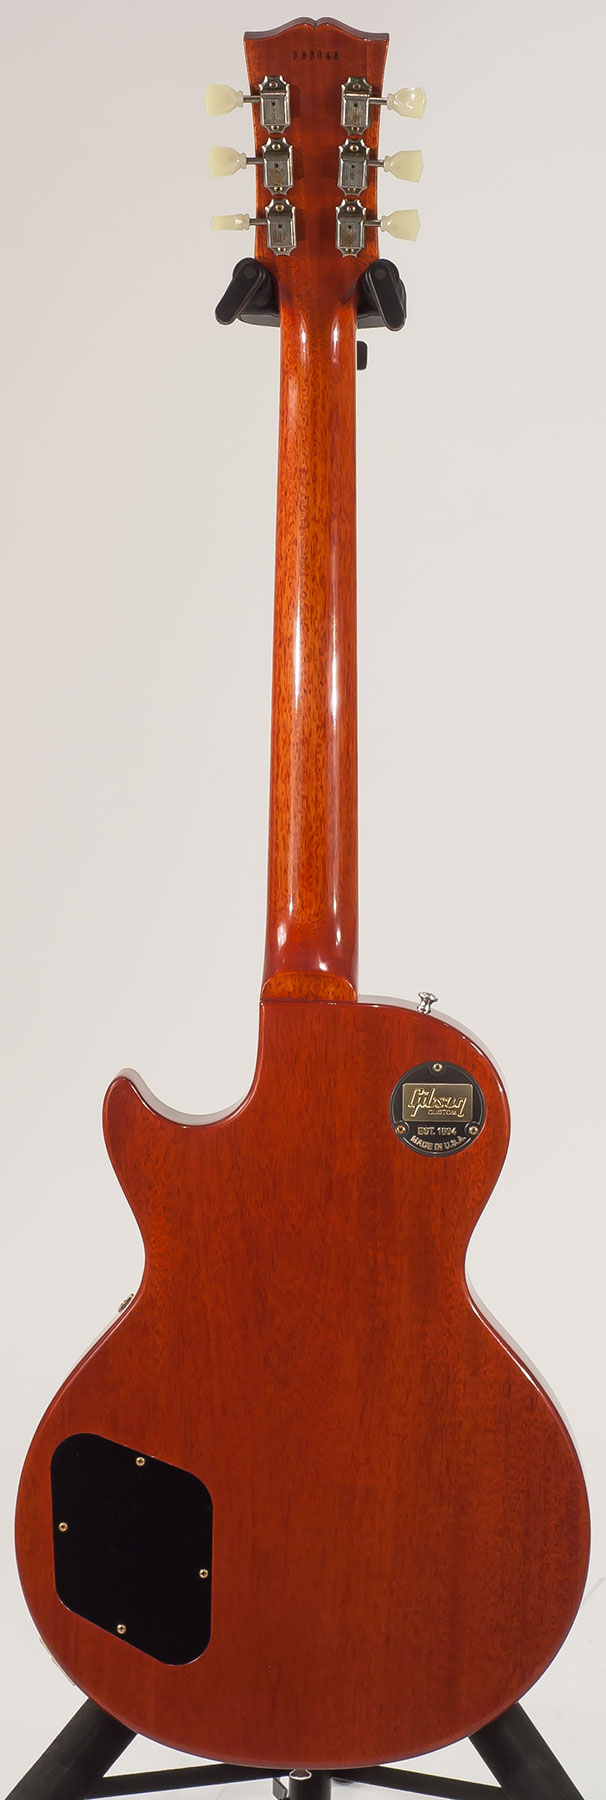 Gibson Custom Shop Les Paul Standard 1959 2h Ht Rw - Vos Vintage Cherry Sunburst - Guitare Électrique Single Cut - Variation 1